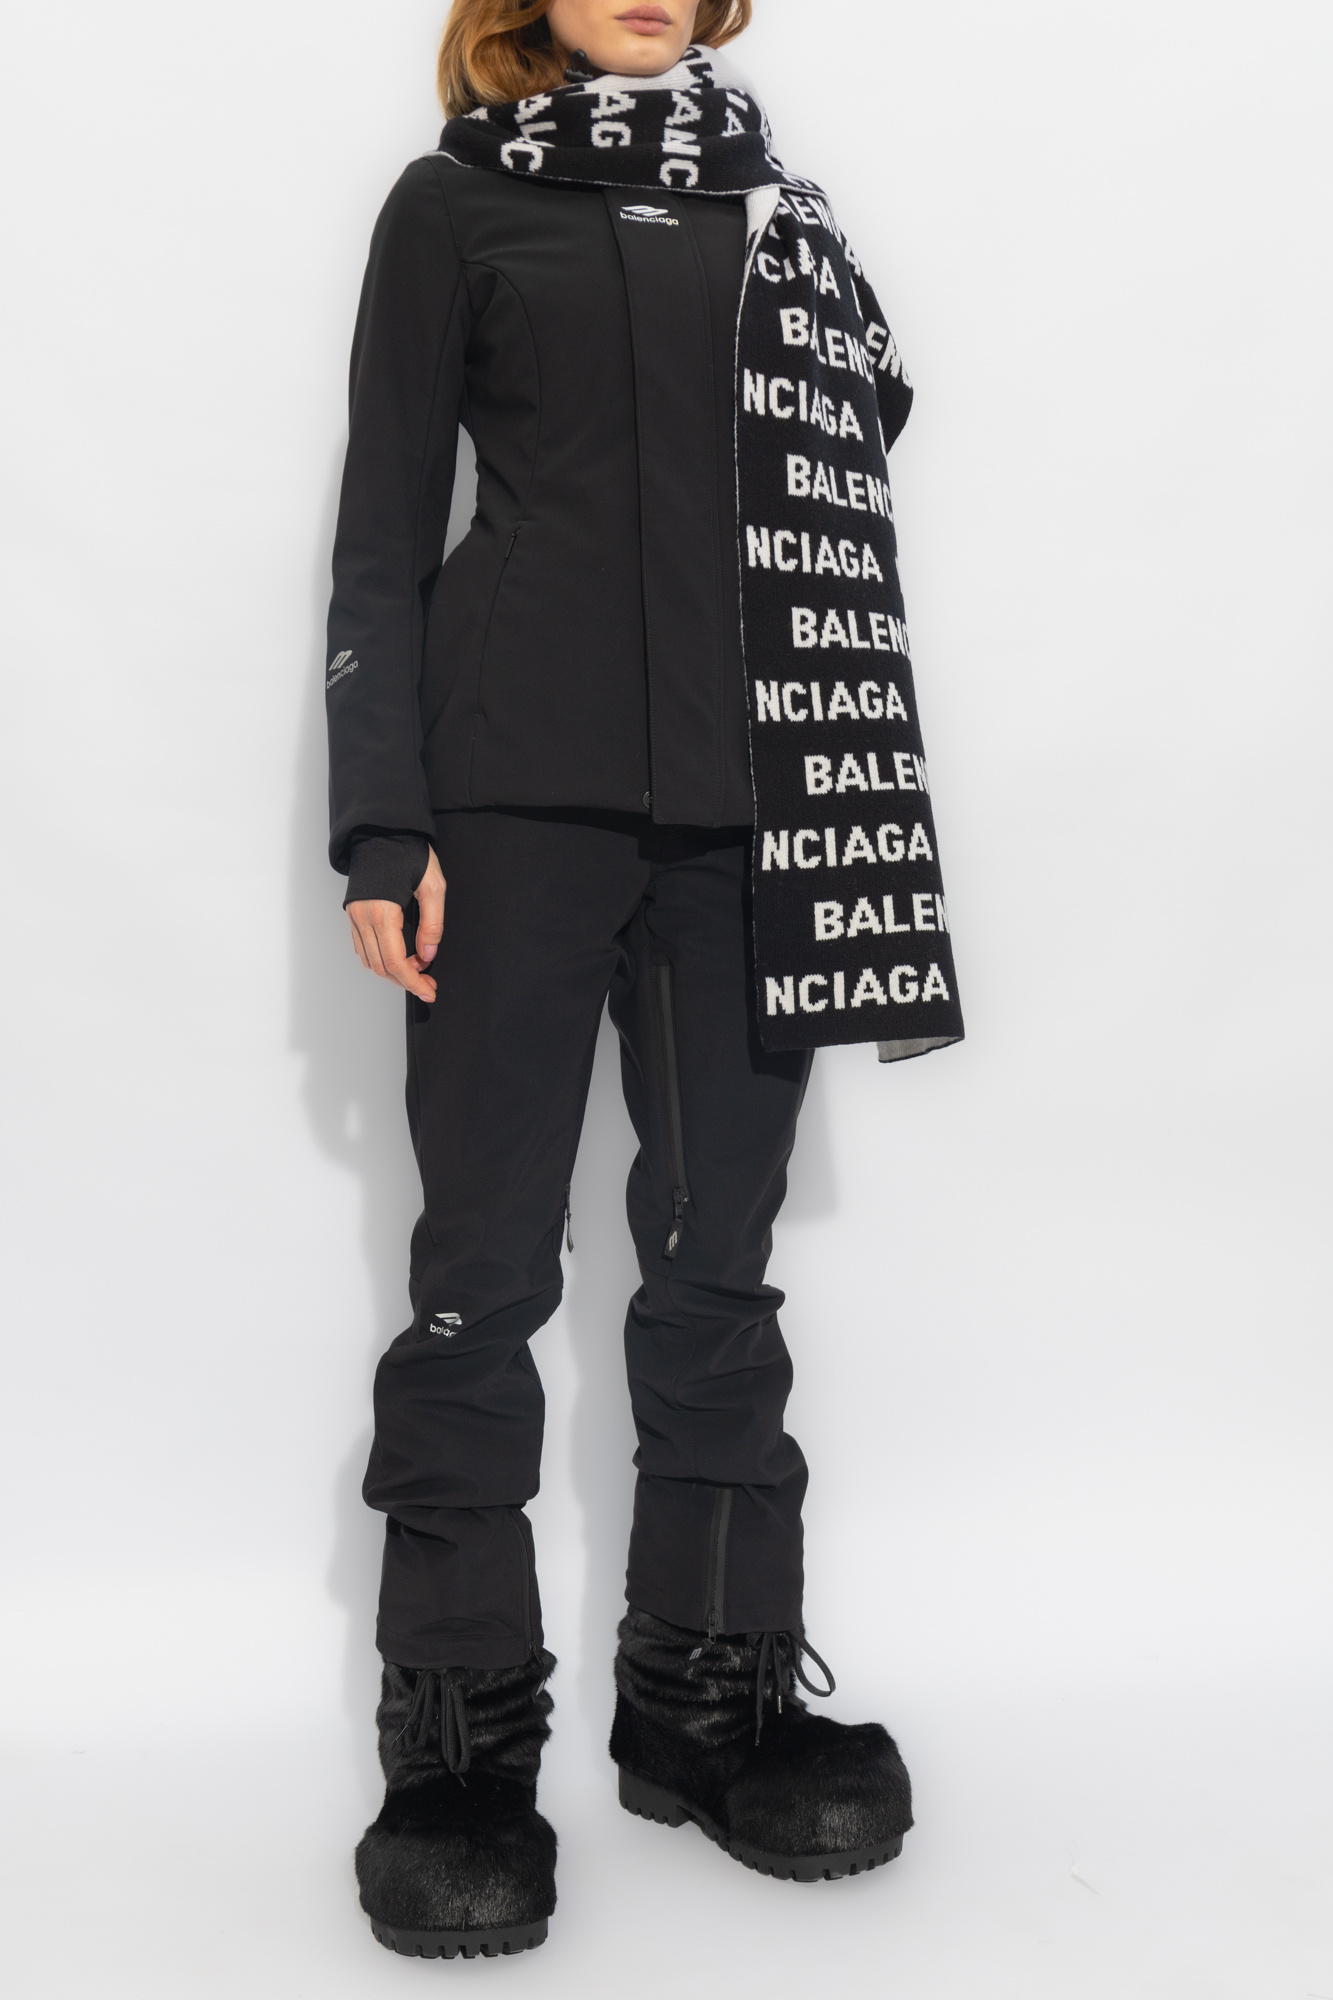 Balenciaga 'Skiwear’ collection sneaker jacket